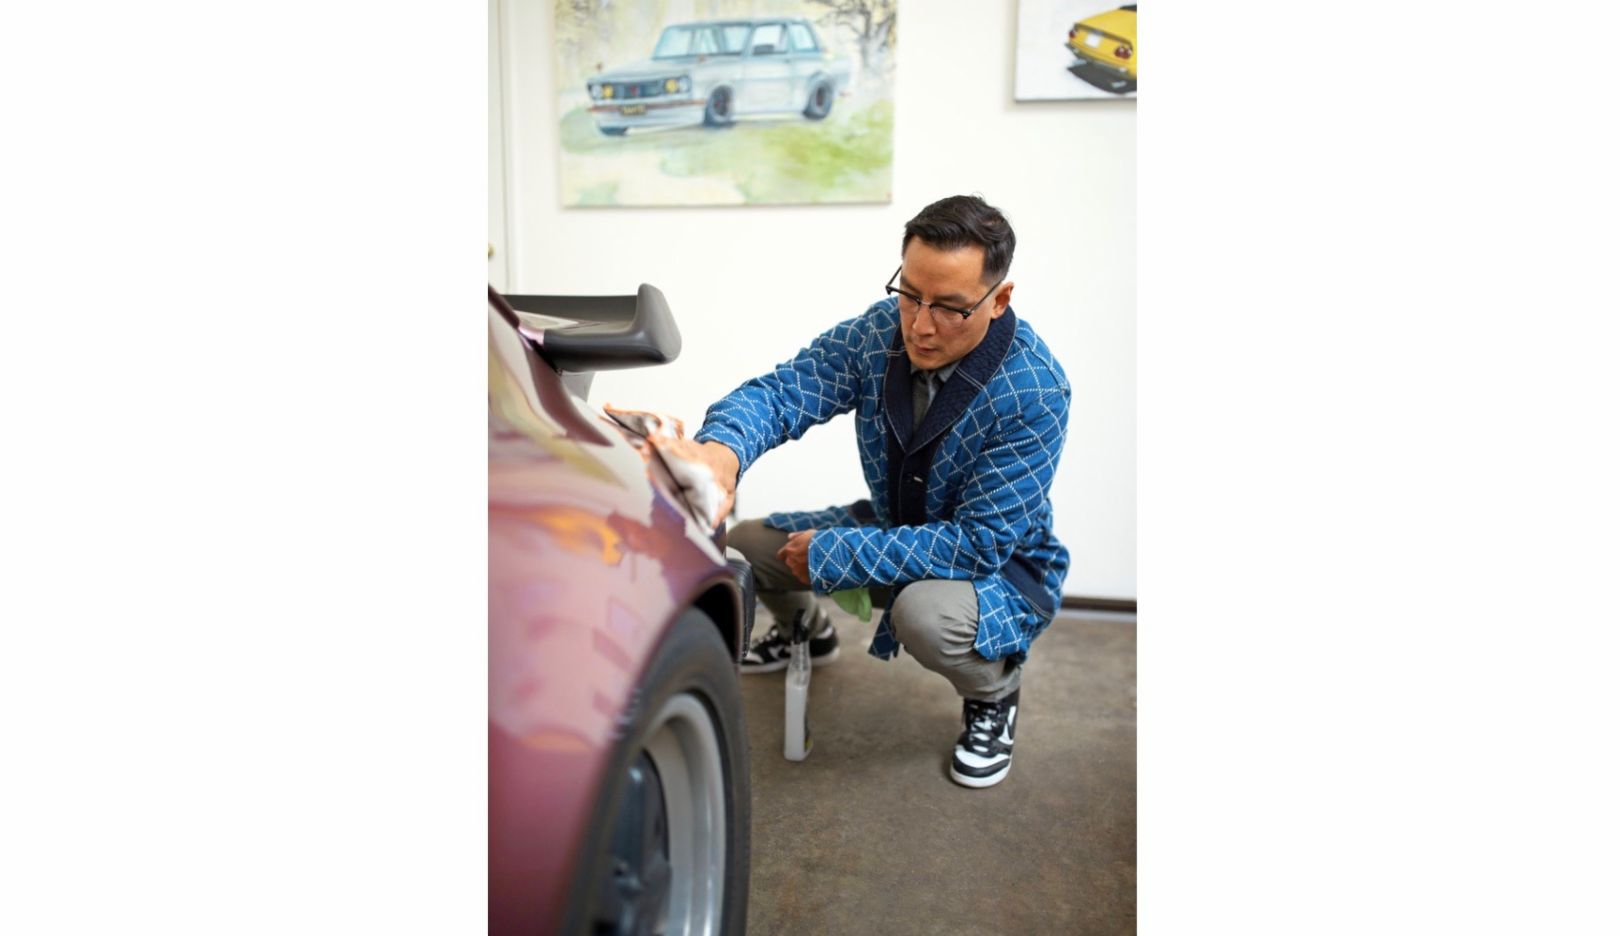 Dziesięć lat temu Daniel Wu przejął od swojego ojca Porsche 911, rocznik 1988 i od tej pory niezmiernie szanuje ten pojazd. Ojciec i syn mają wiele wspólnych wspomnień związanych z tym sportowym wozem.